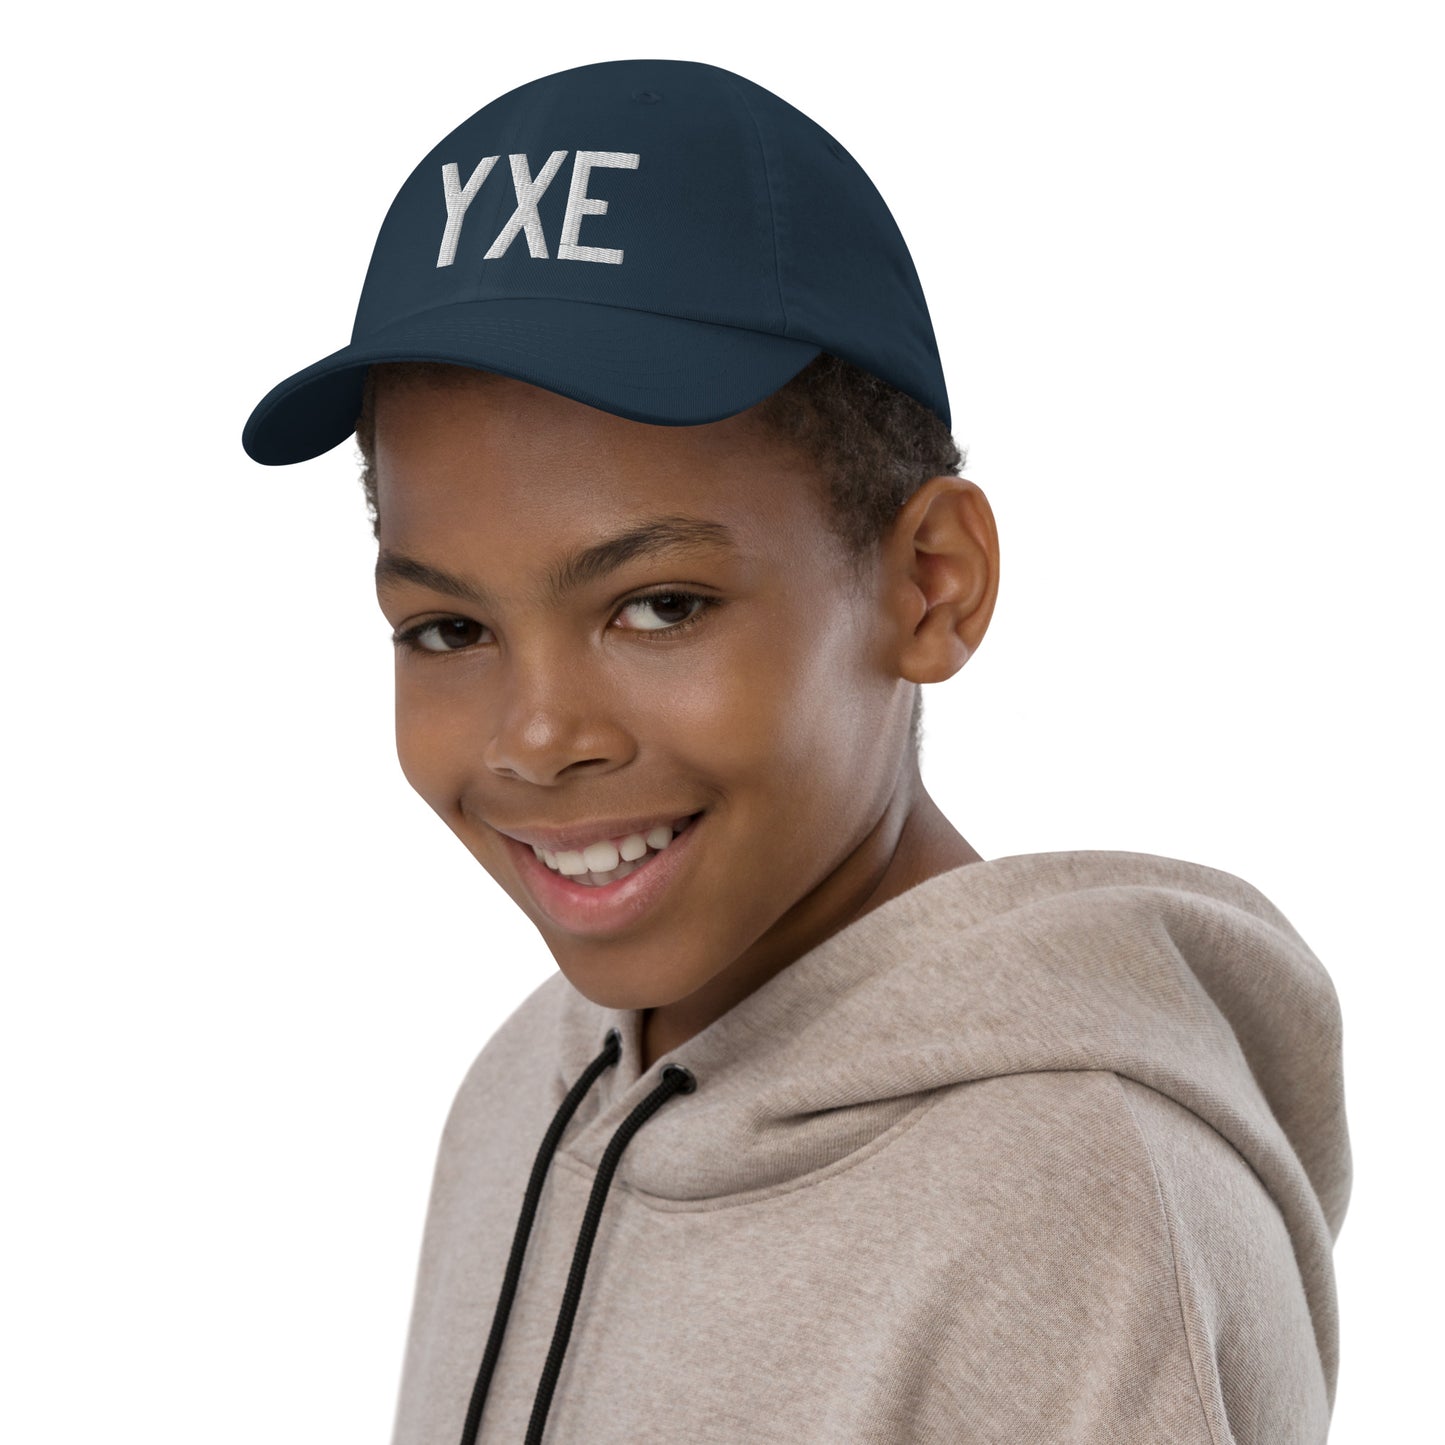 Airport Code Kid's Baseball Cap - White • YXE Saskatoon • YHM Designs - Image 03